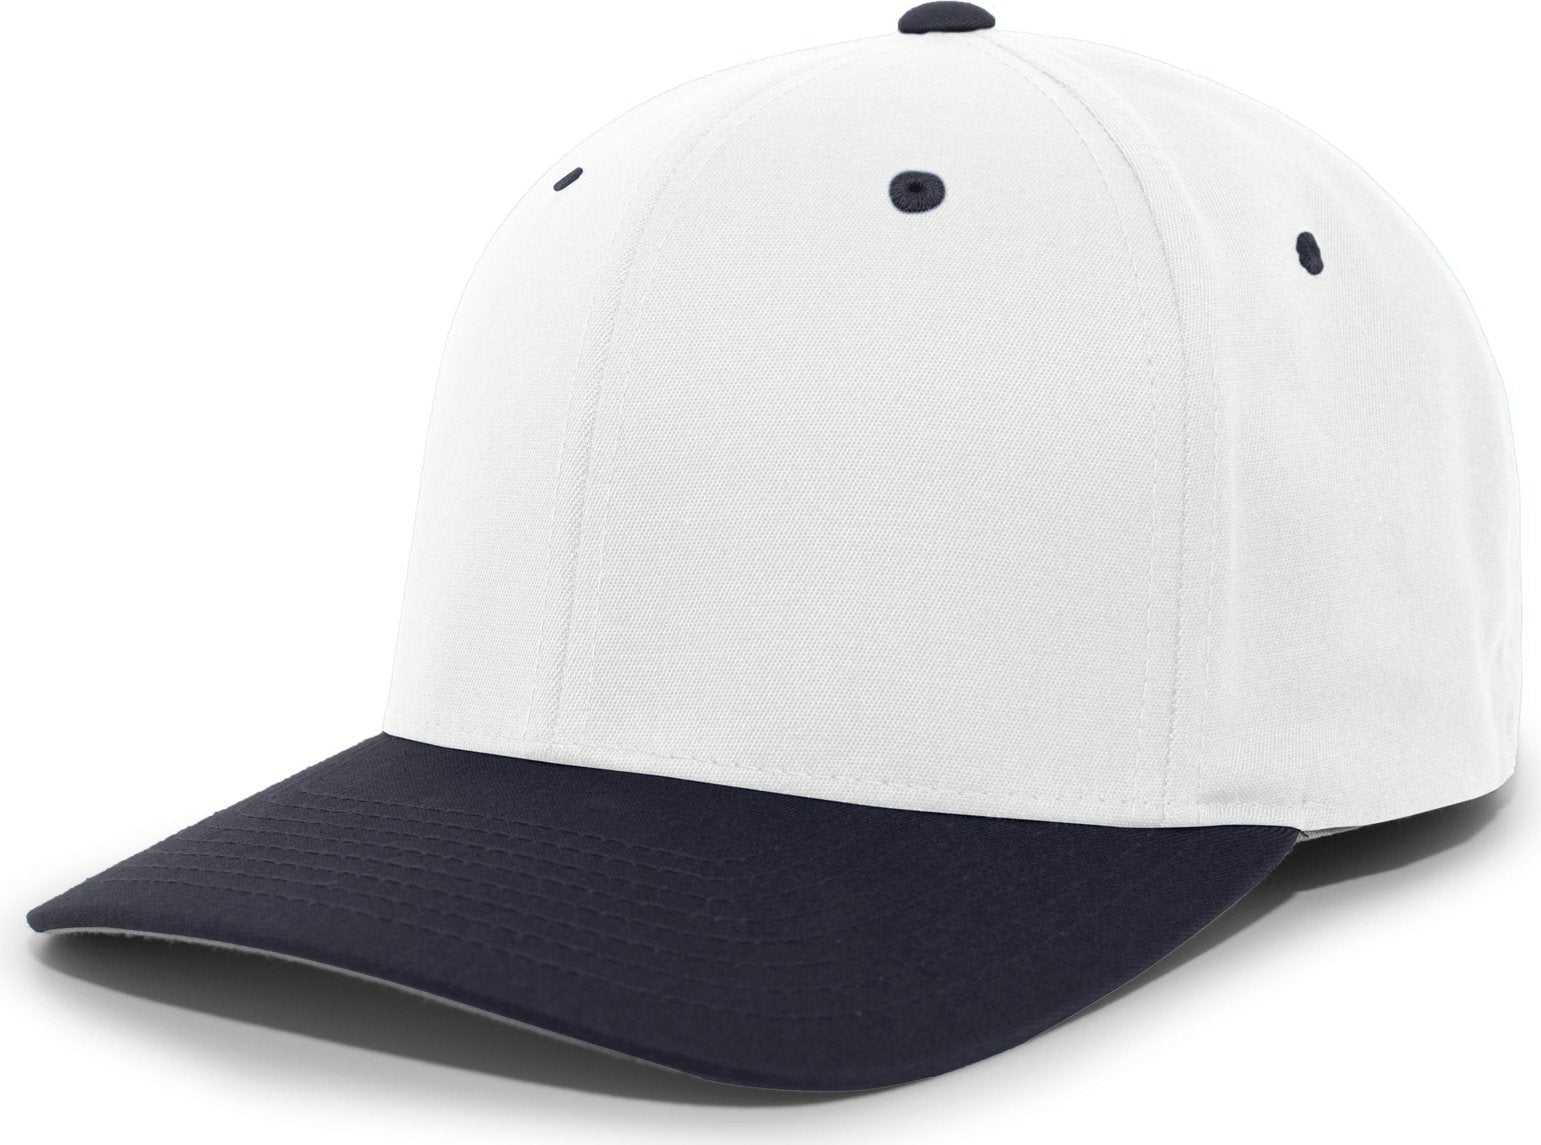 Pacific Headwear 430C Cotton-Poly Flexfit Cap - White Navy - HIT a Double